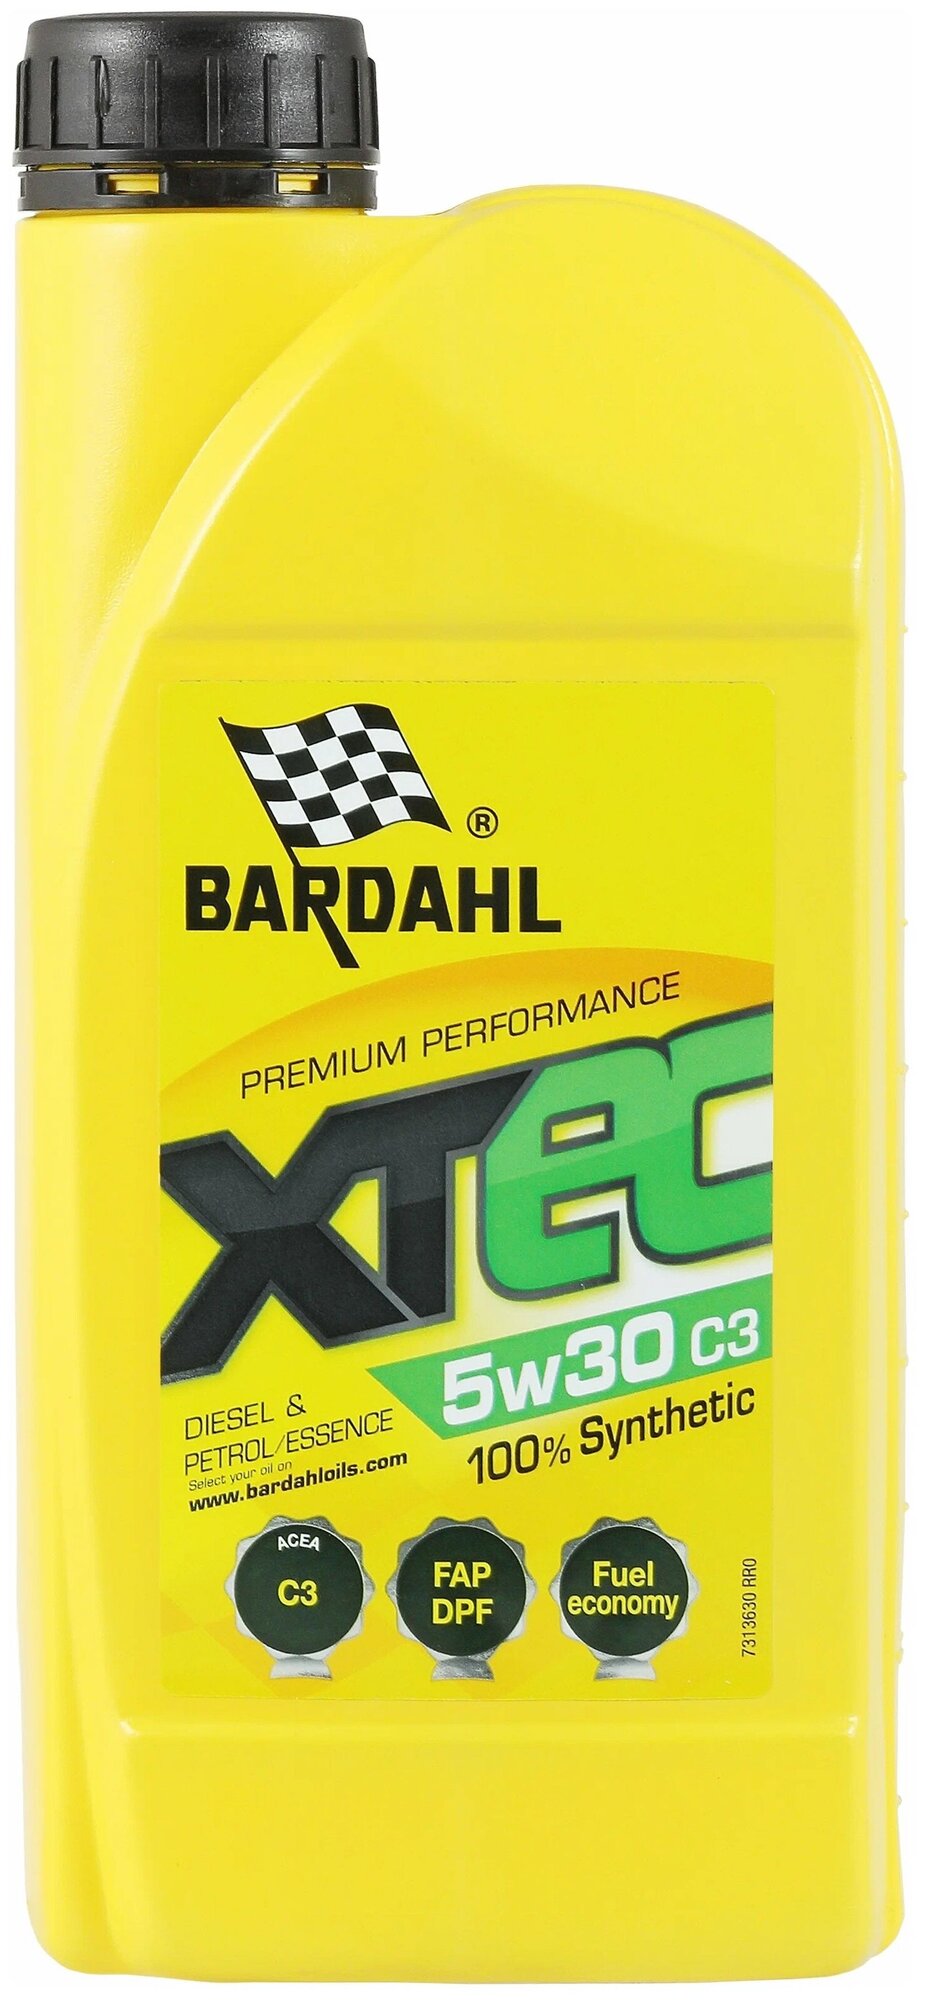 Синтетическое моторное масло Bardahl XTEC 5W-30 C3, 1 л, 1 шт.